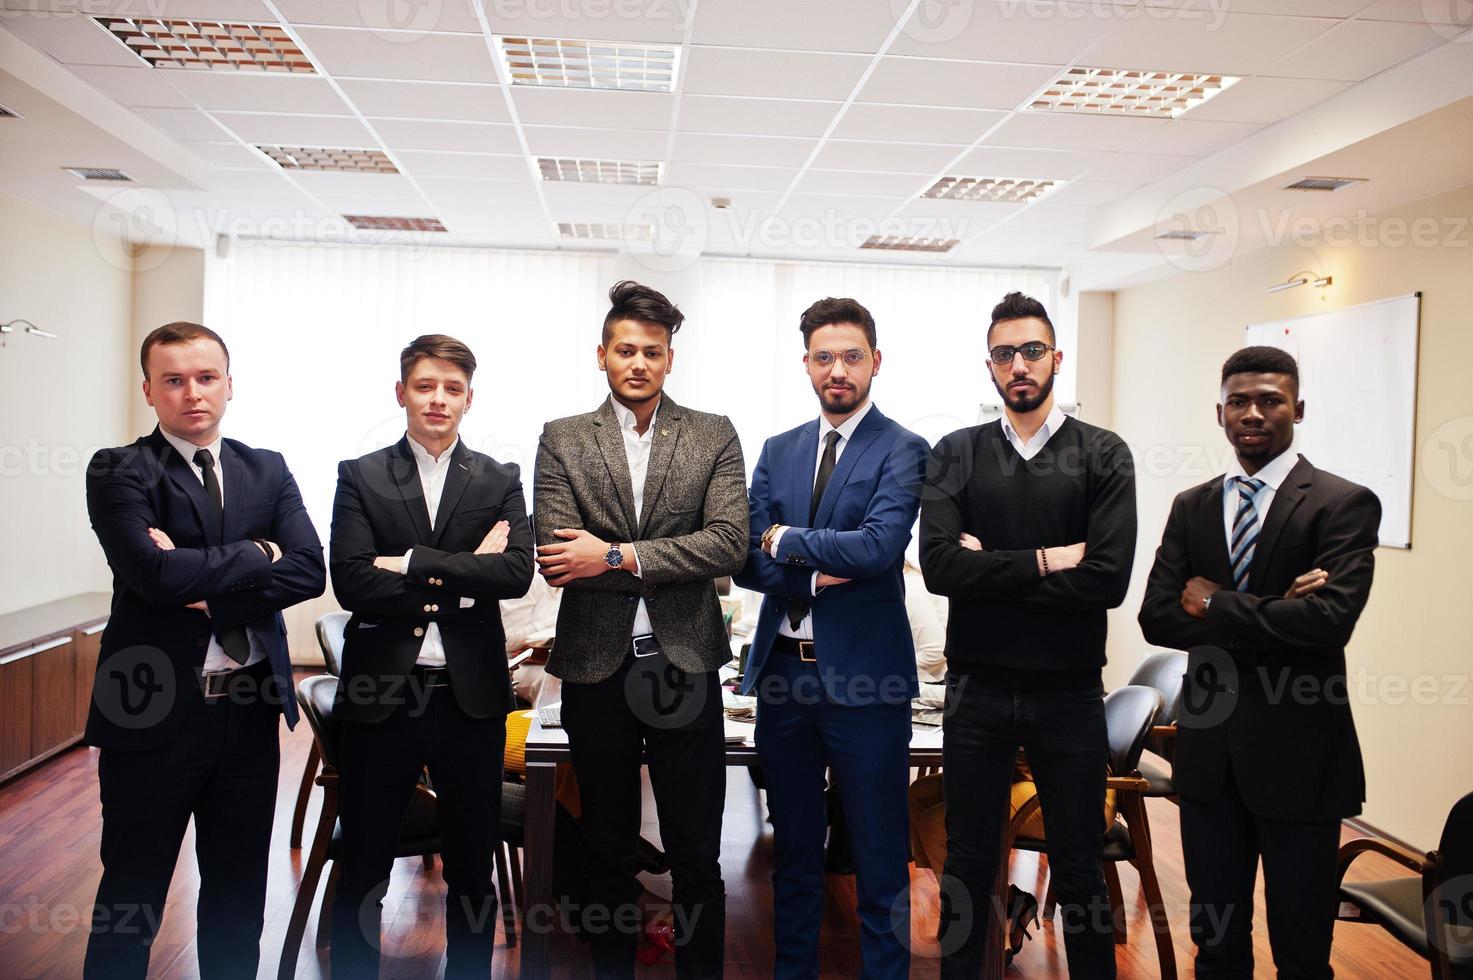 sex multiracial affärsmän står på kontoret med korsade armar. mångfaldig grupp av manliga anställda i högtidskläder. foto